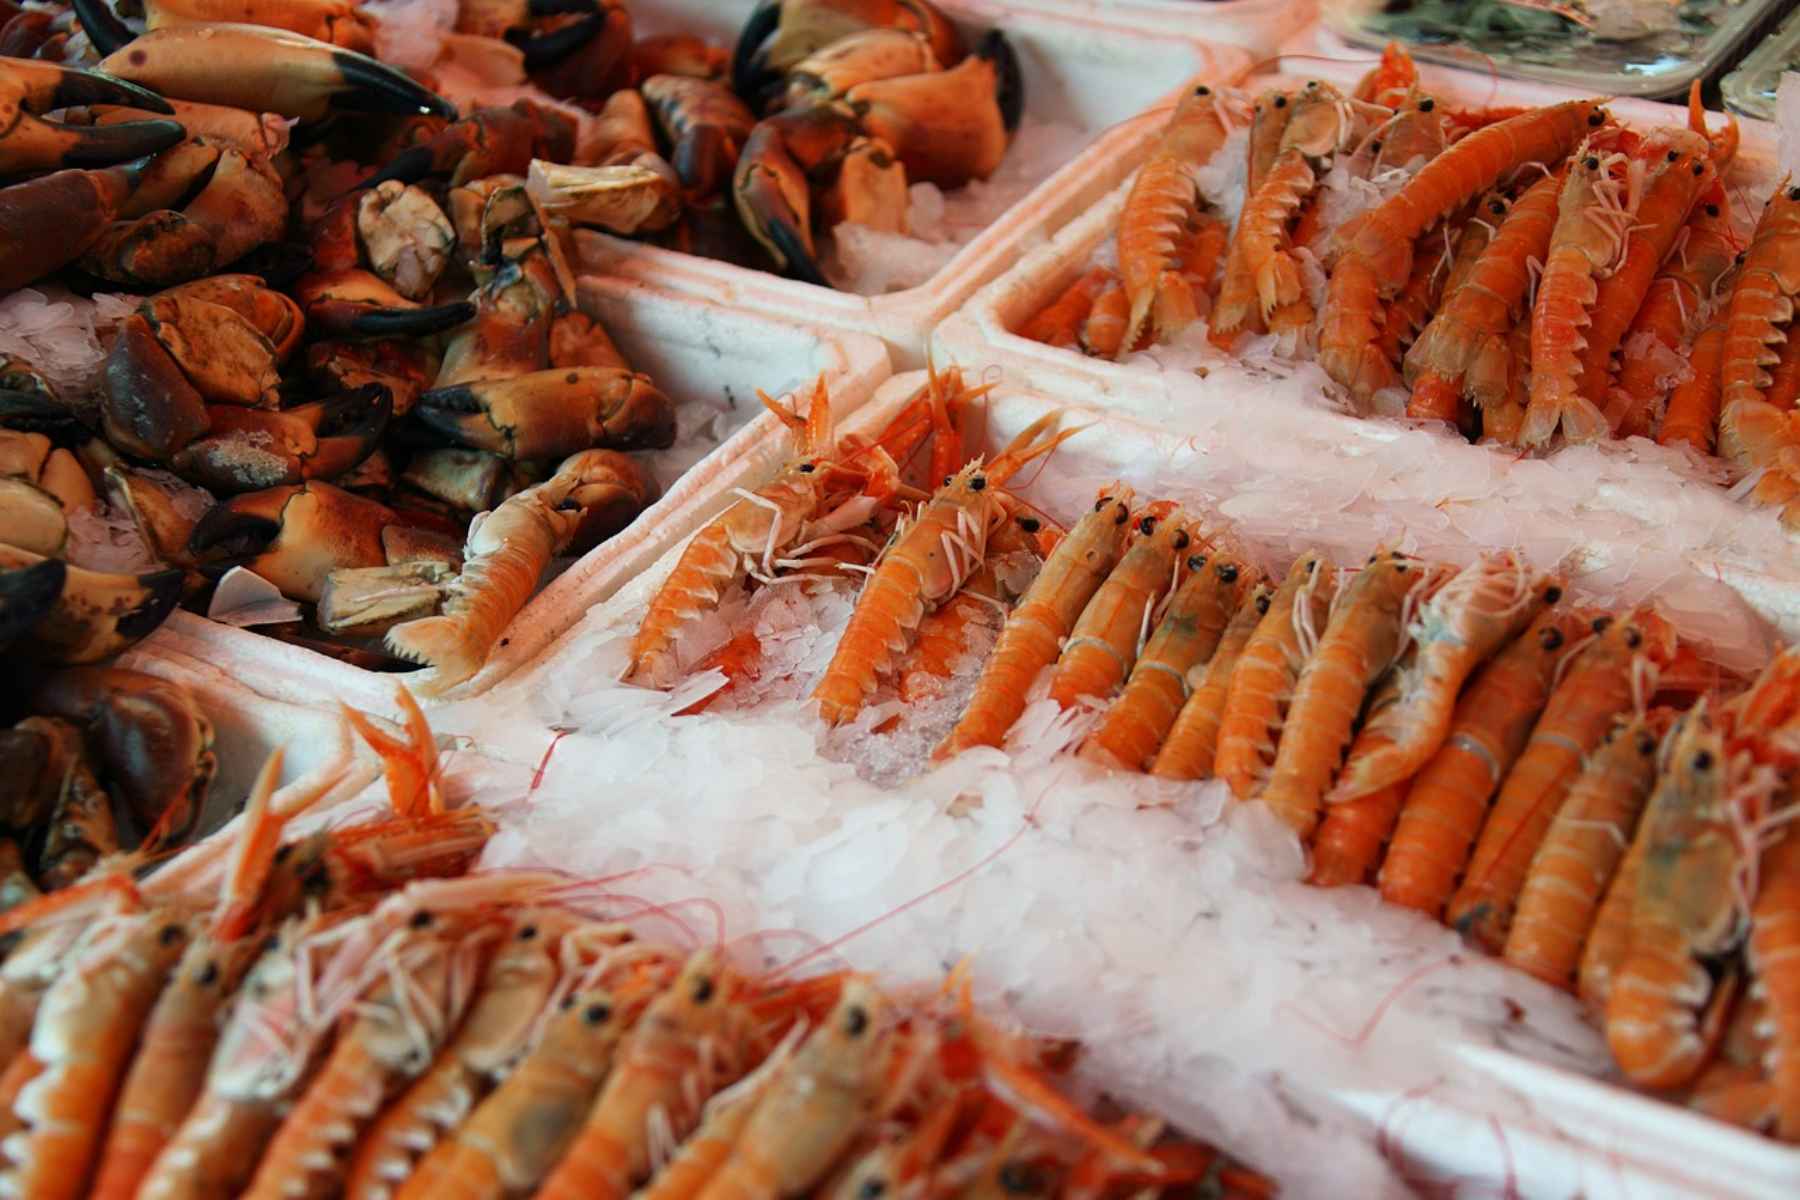 Σαρακοστή και διατροφή :Τι να προσέχεις όταν αγοράζεις θαλασσινά;